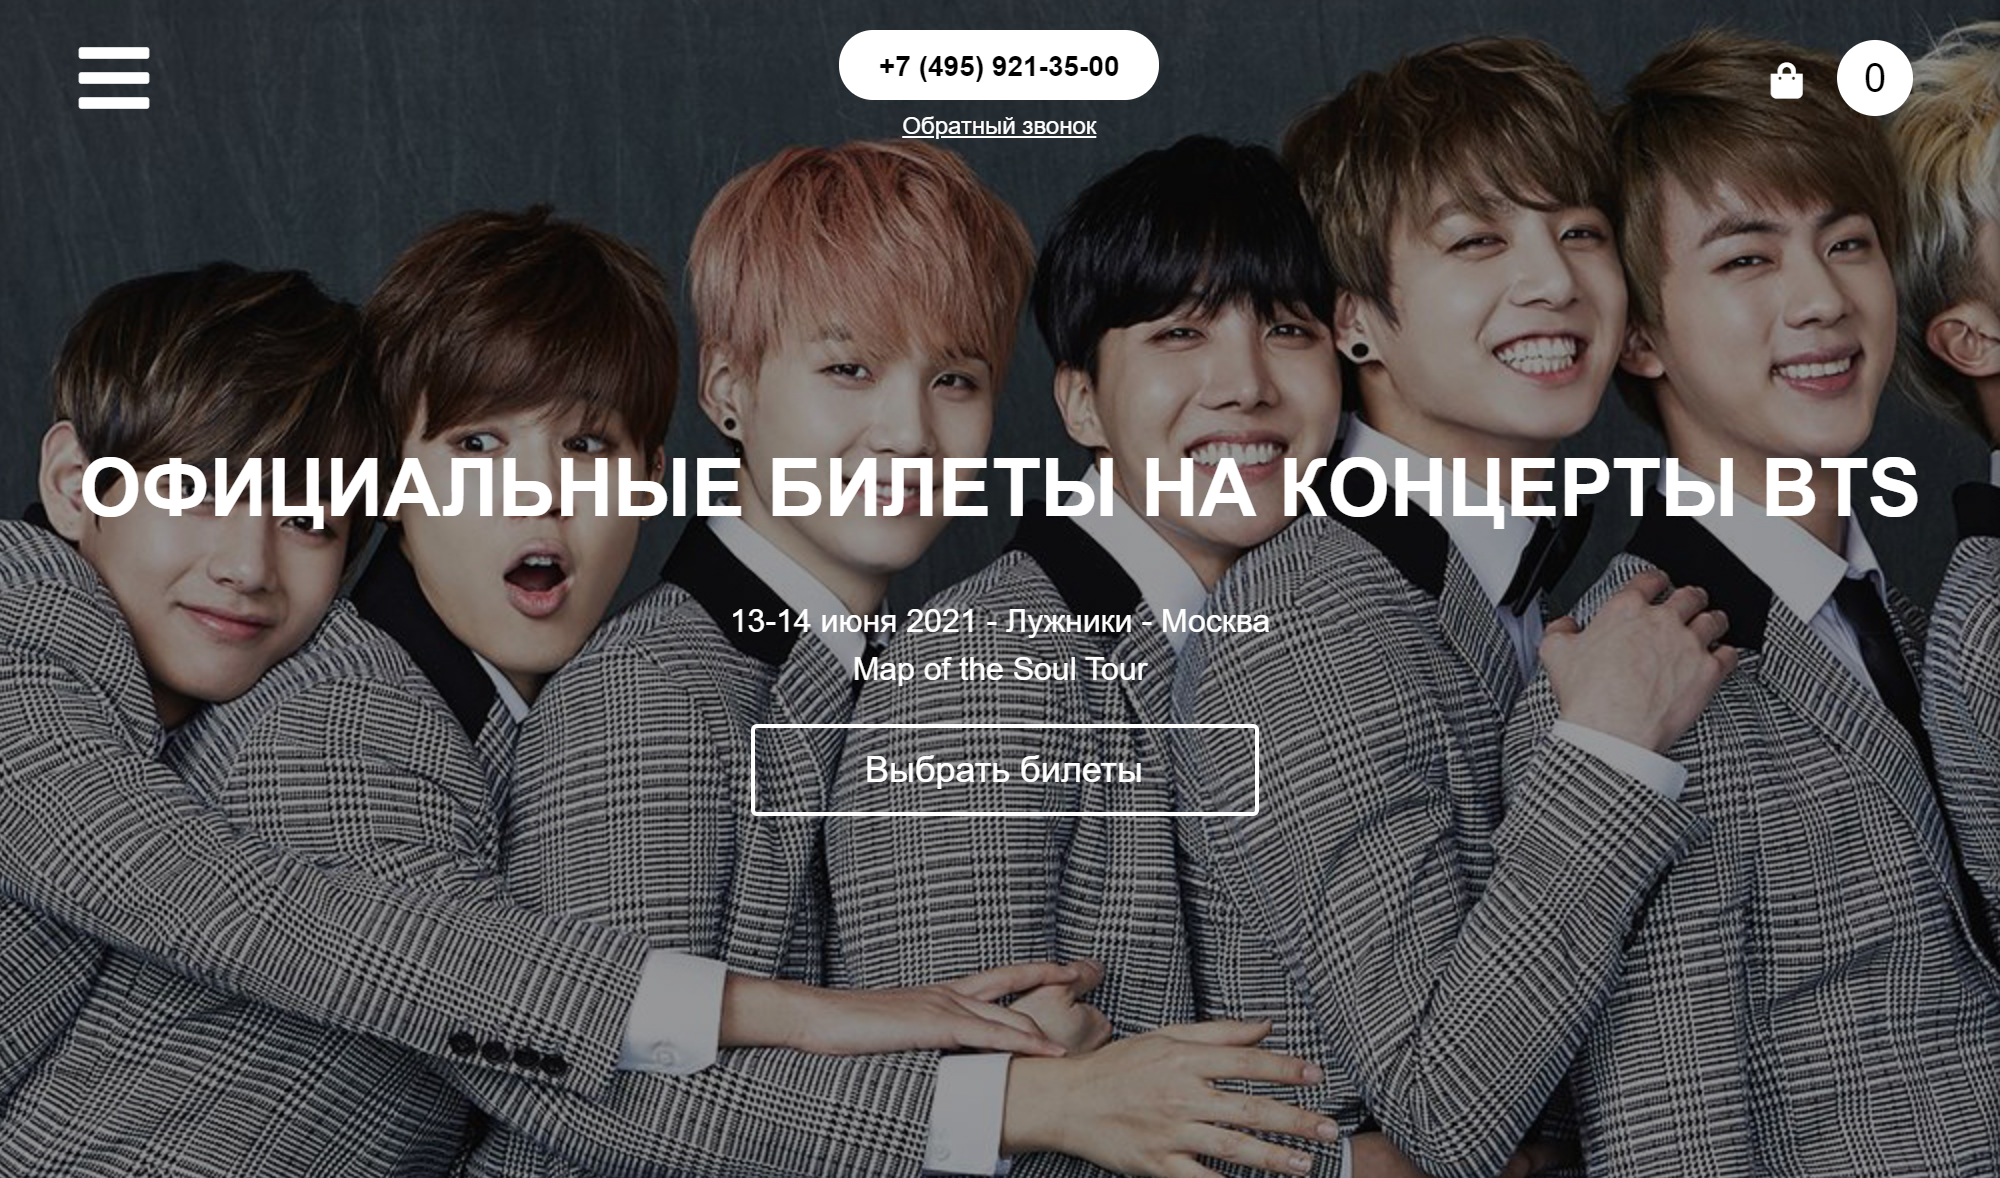 На поддельном сайте организовали продажу билетов на концерт популярной корейской группы. Но выступать в России группа не планировала